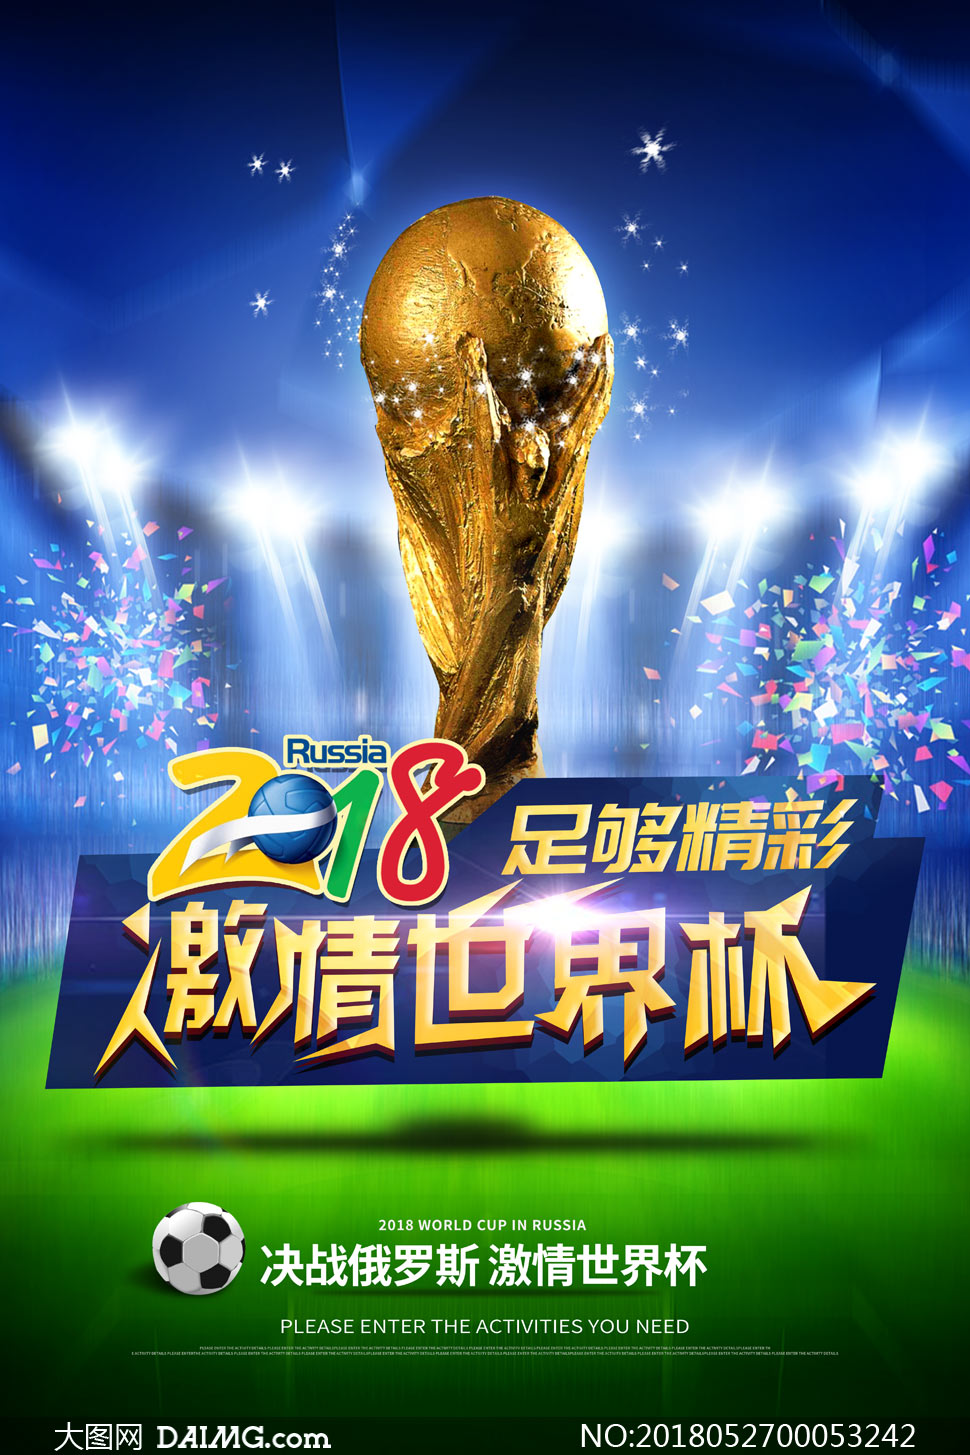 2018激情世界杯海报设计PSD素材